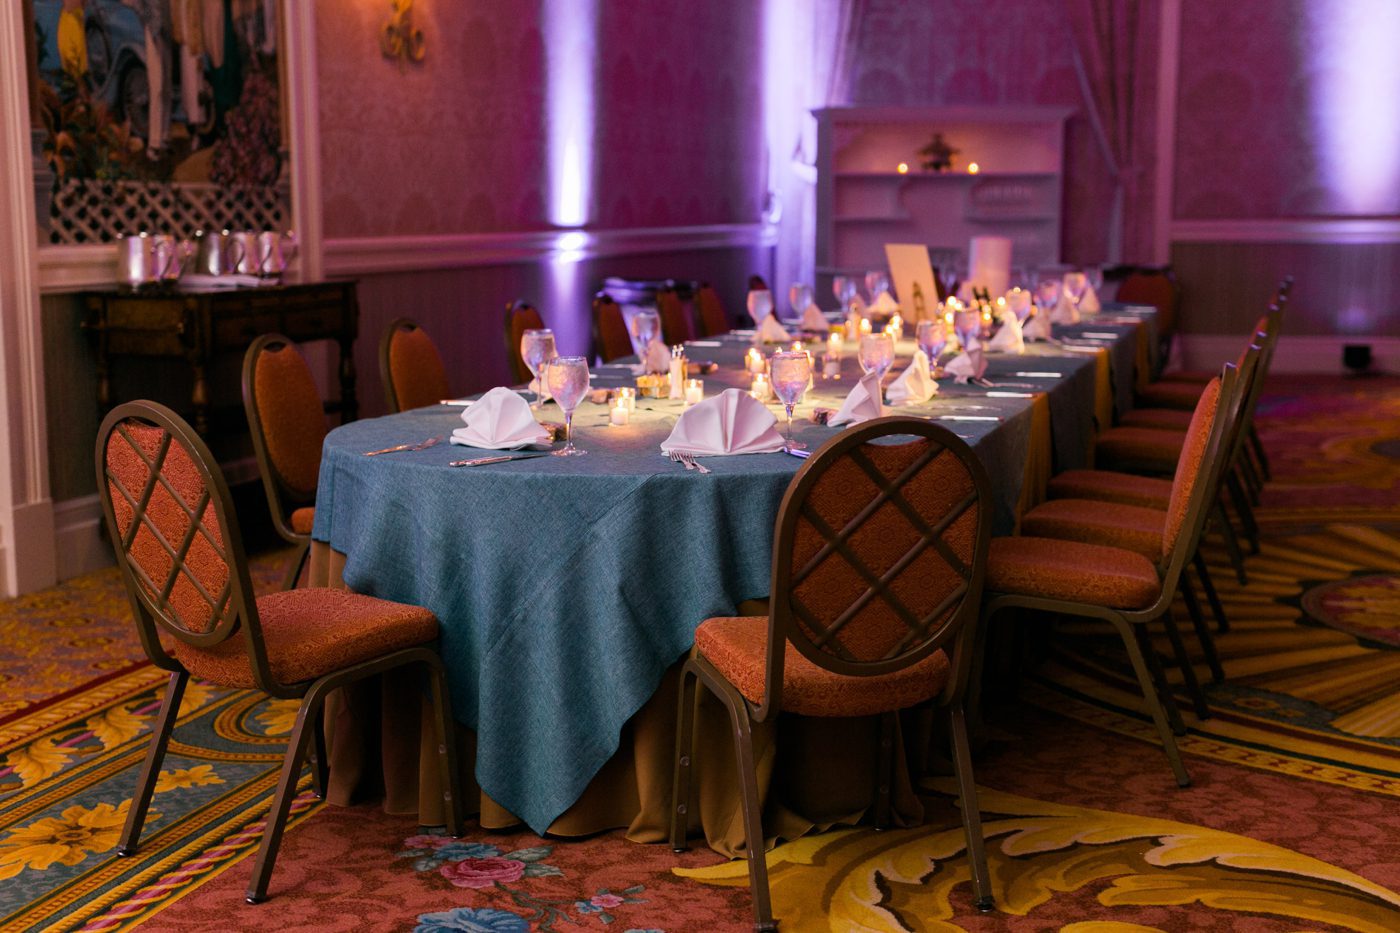 Flynn Rider themed wedding reception table